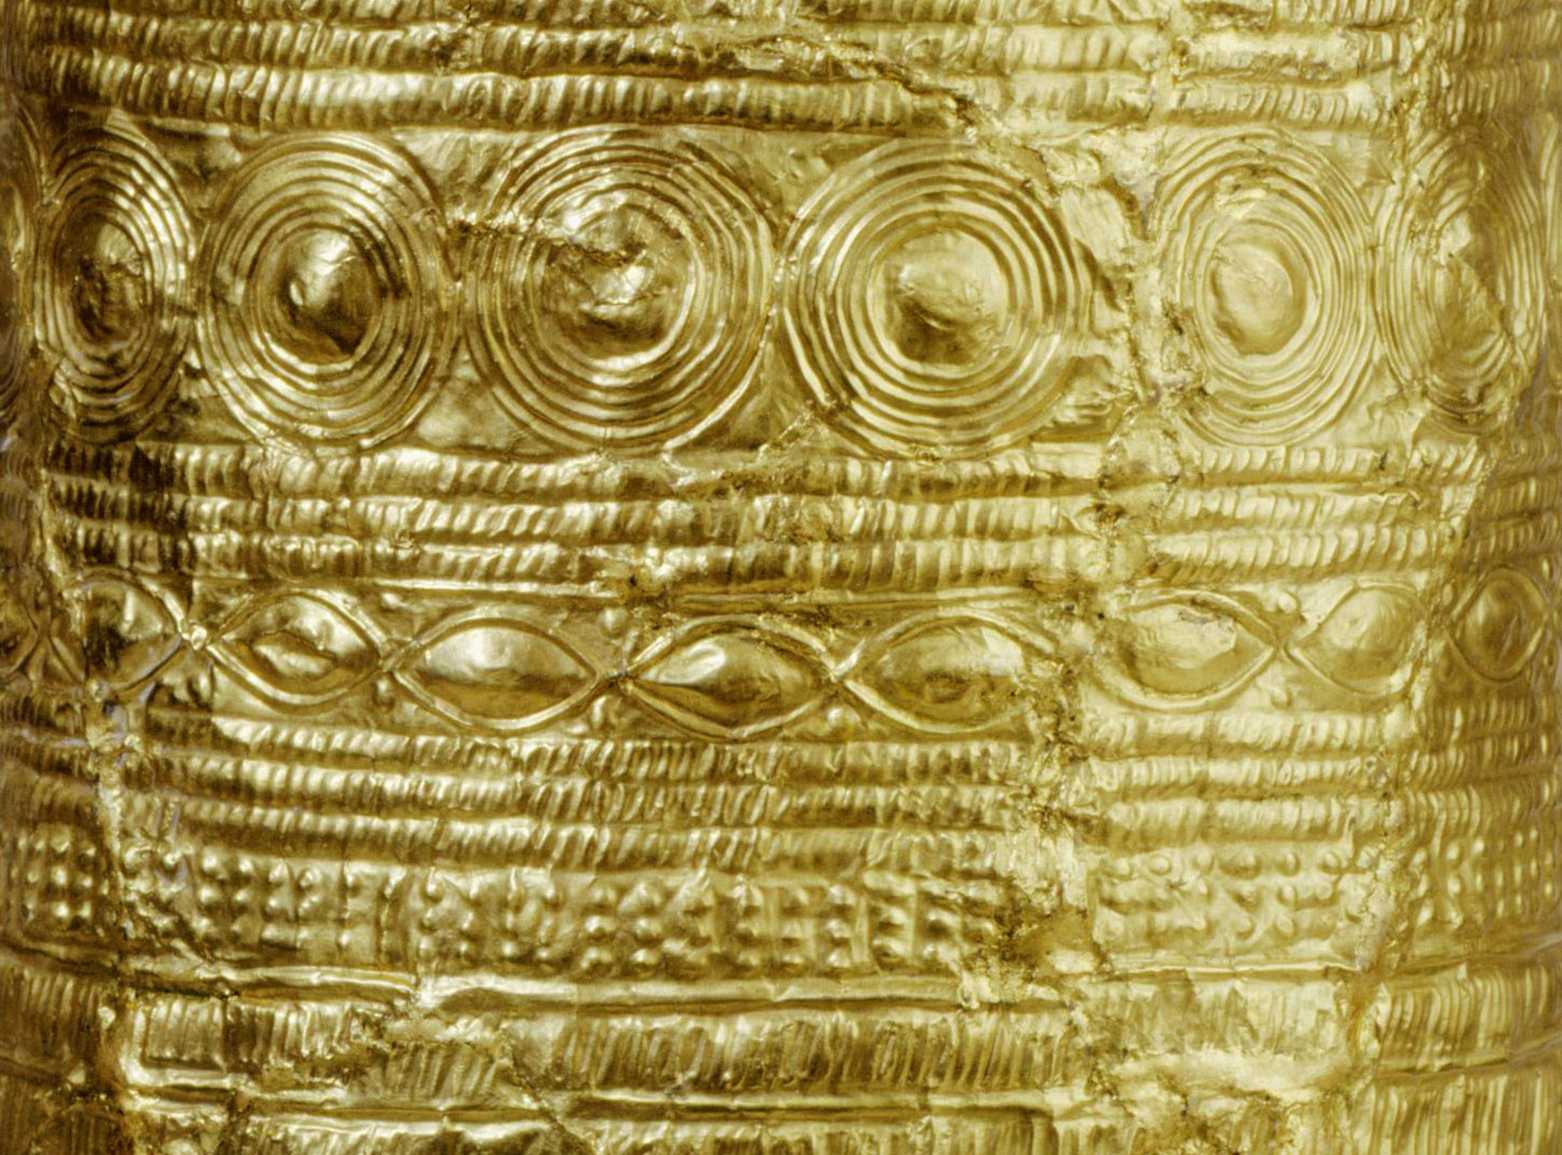 Die Abbildung zeigt eine Detailaufnahme des bronzezeitlichen Ezeldorfer Goldkegels. Die Fotoaufnahme stammt vom Germanischen Nationalmuseum.